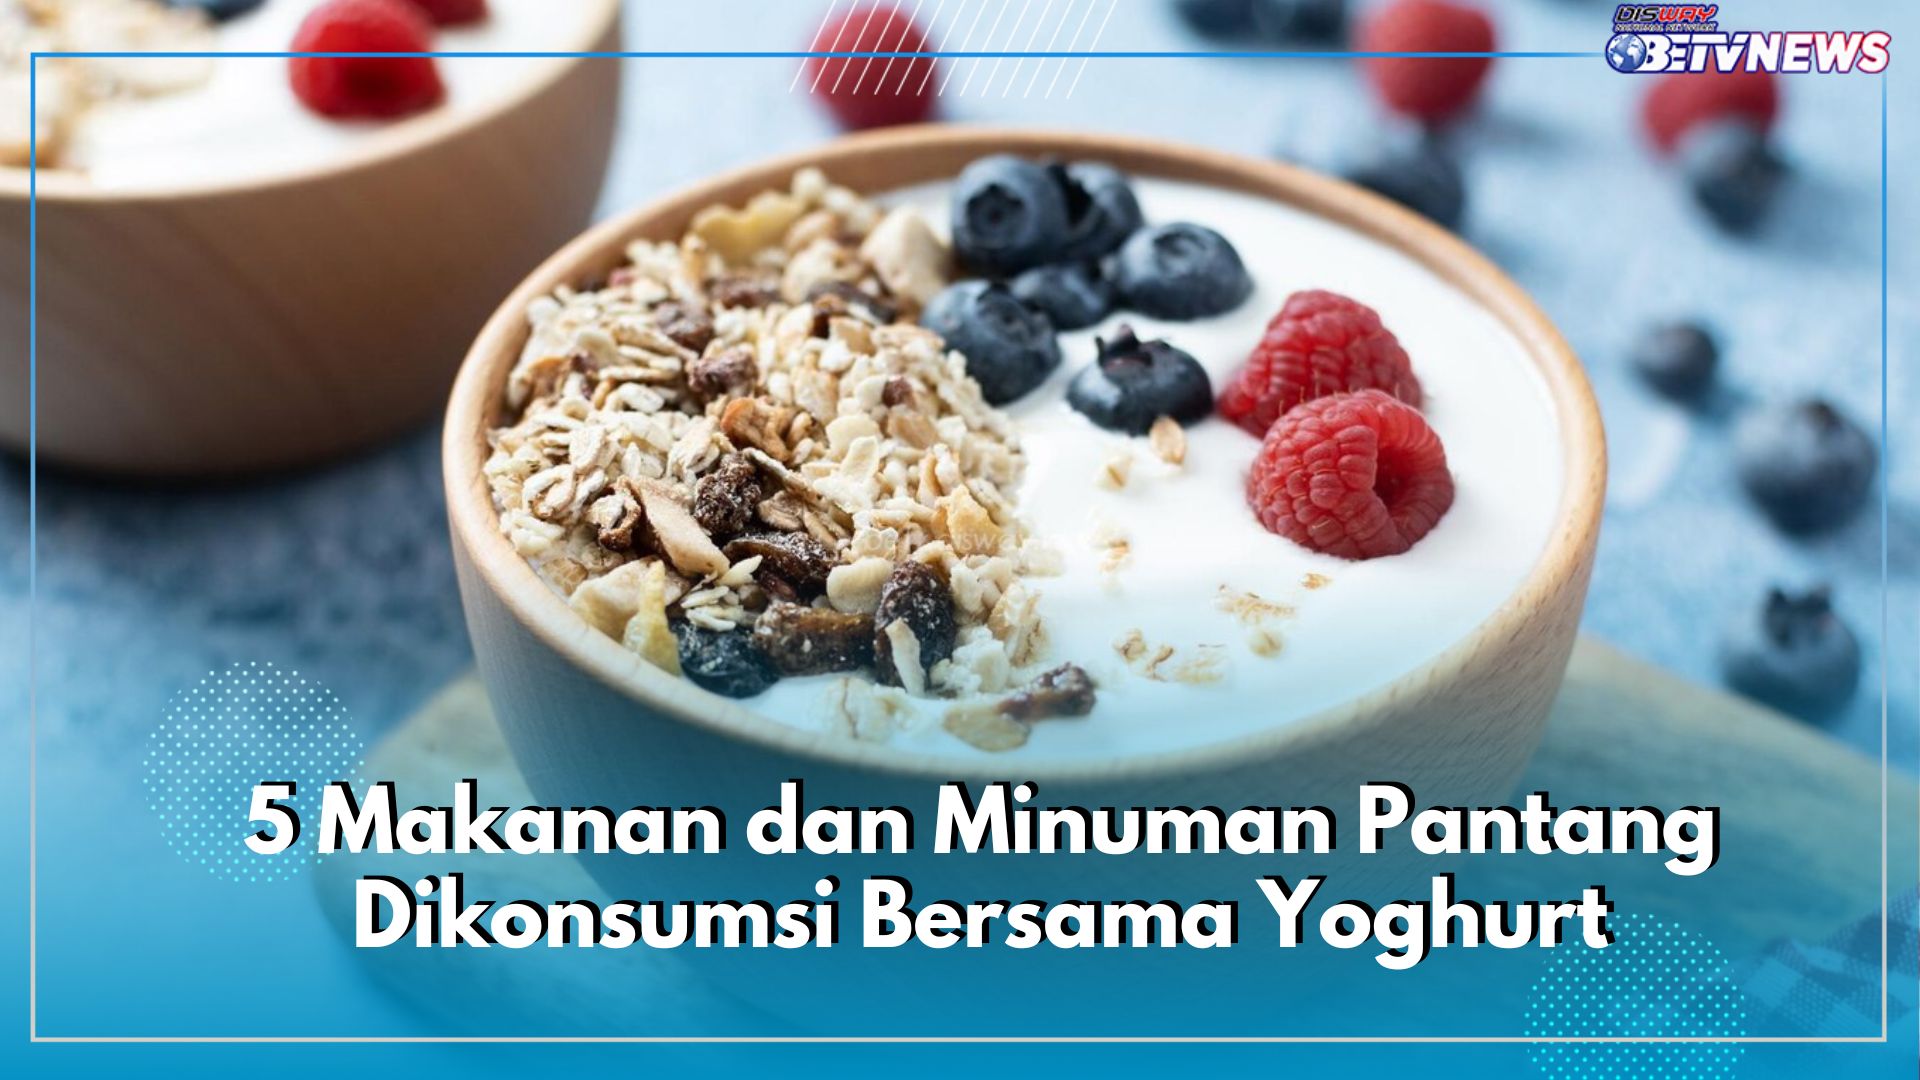 5 Makanan dan Minuman Ini Pantang Dikonsumsi Bersama Yoghurt, Mengurangi Manfaat Nutrisinya